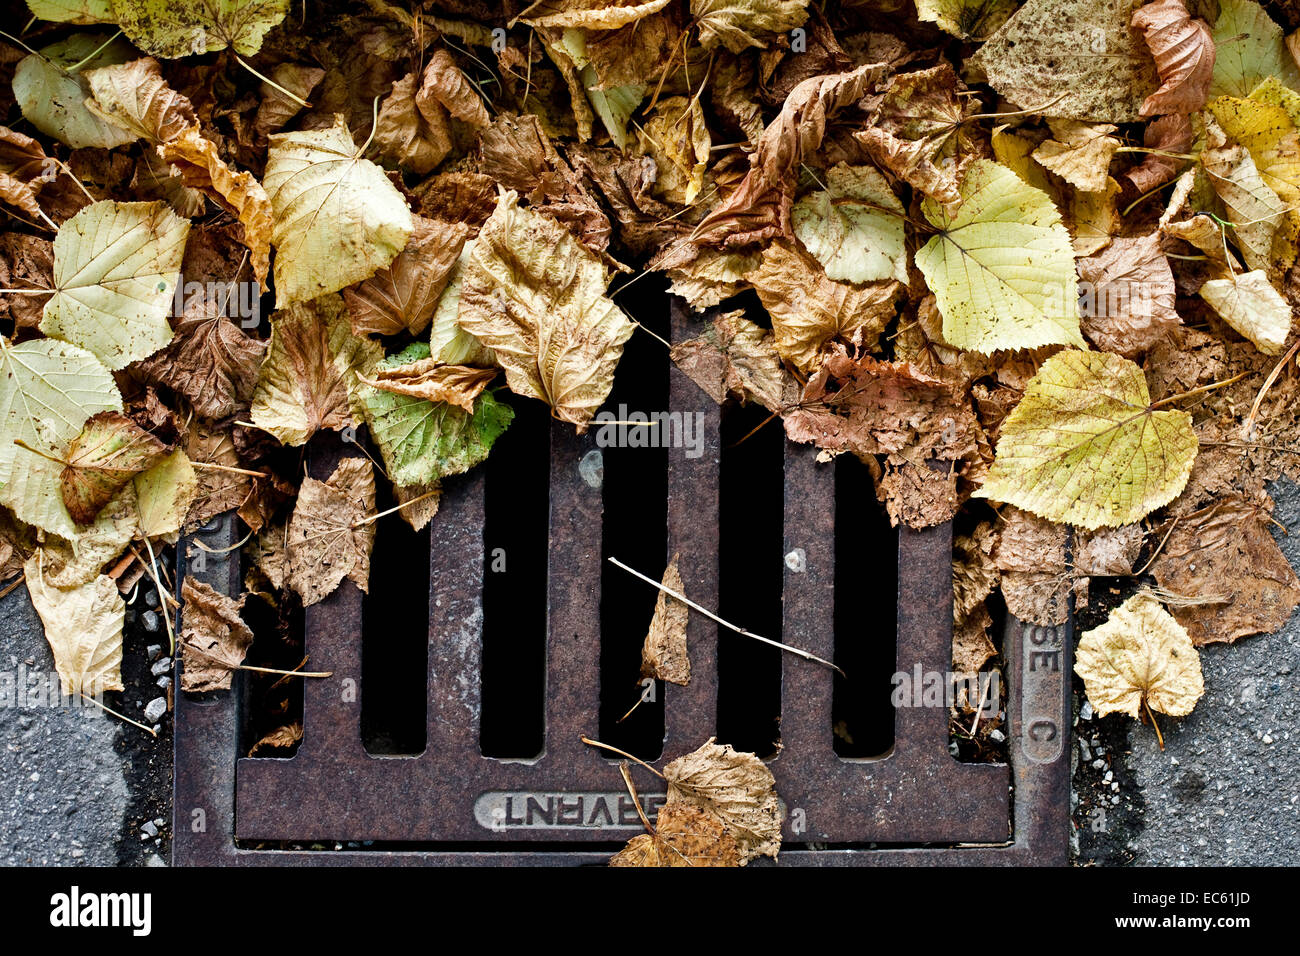 autumn foliage on a manhole cover Stock Photo